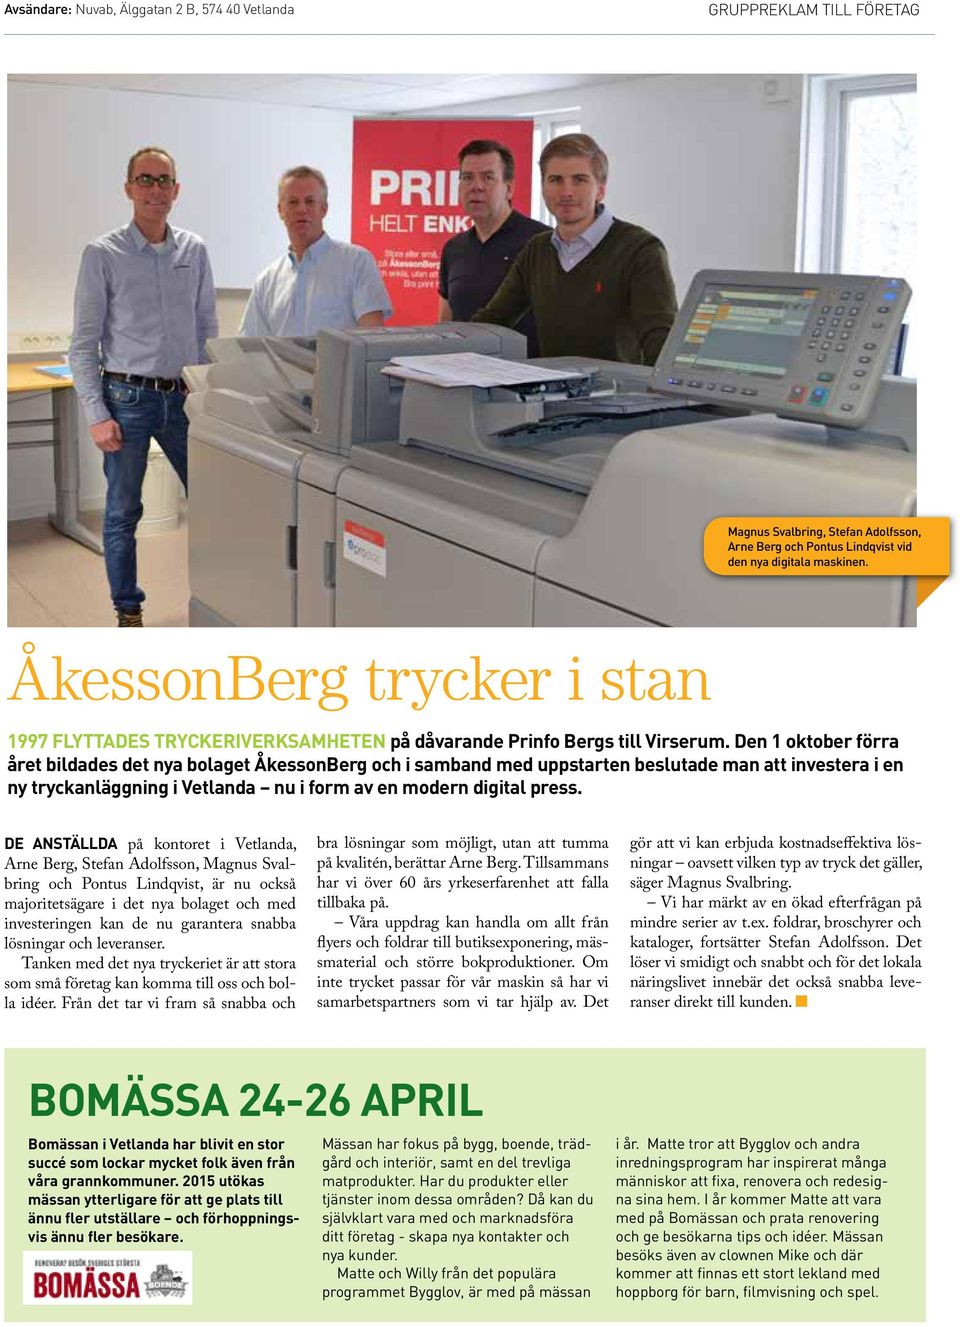 Den 1 oktober förra året bildades det nya bolaget ÅkessonBerg och i samband med uppstarten beslutade man att investera i en ny tryckanläggning i Vetlanda nu i form av en modern digital press.